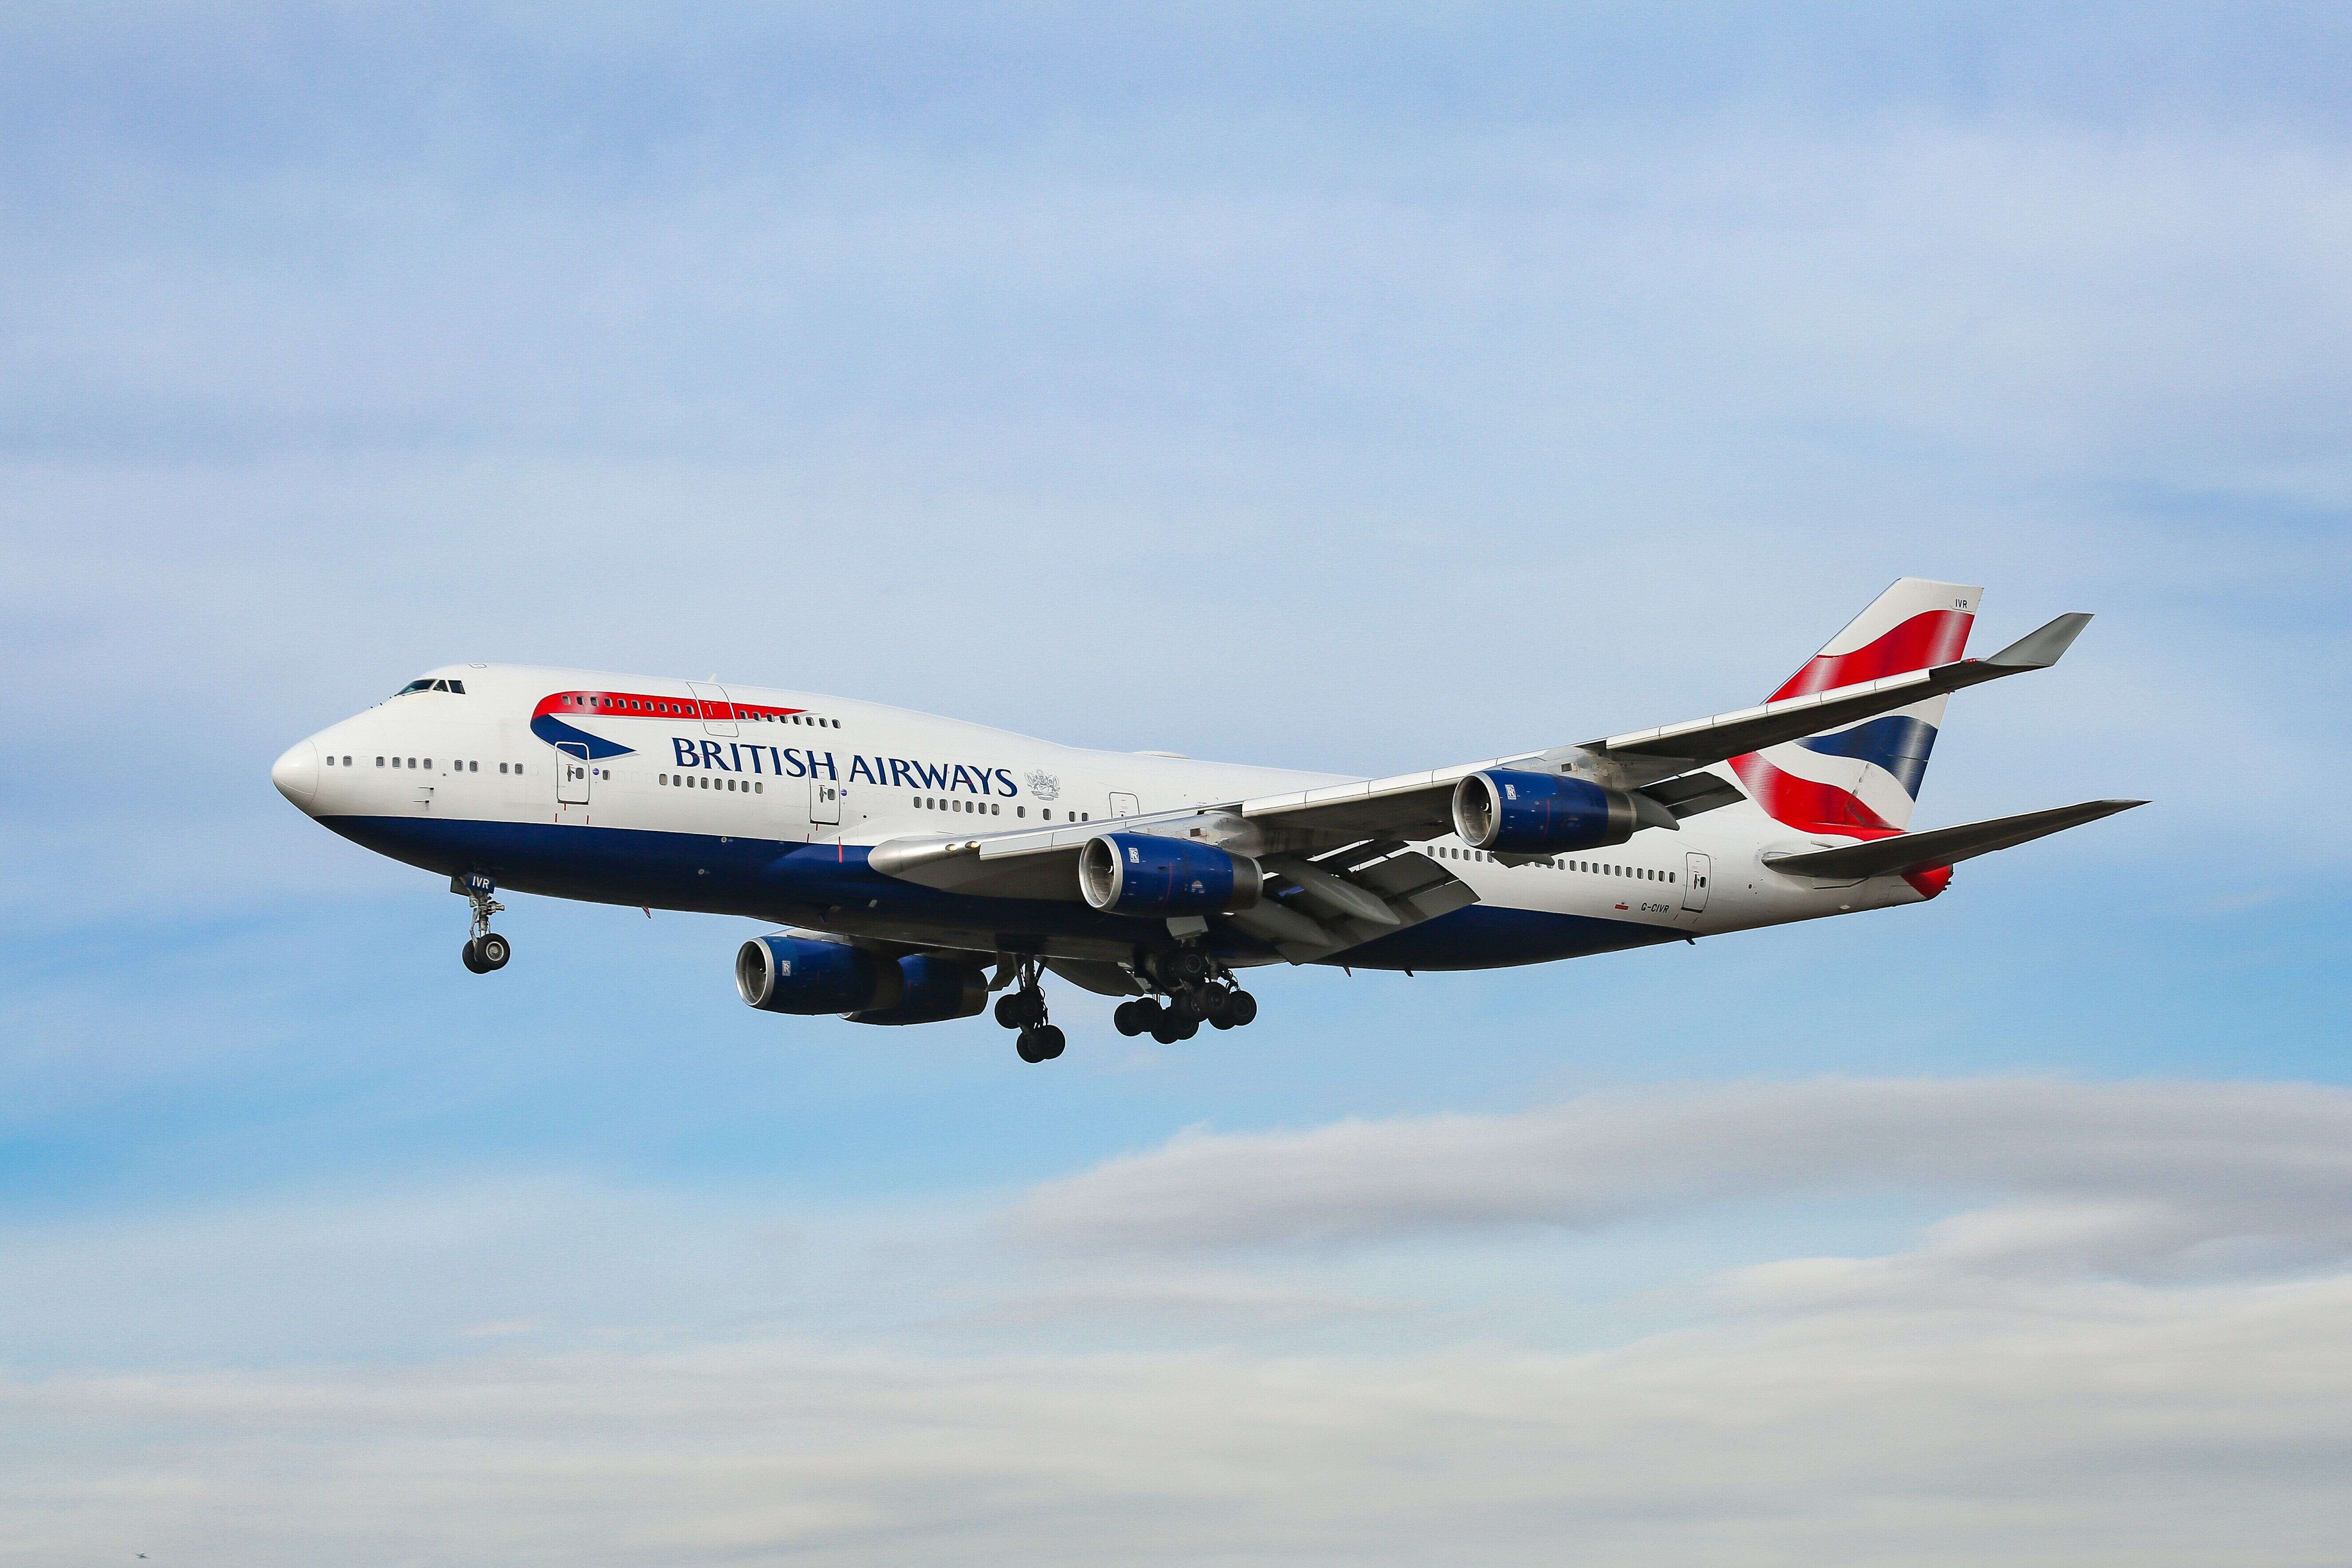 C'est un Boeing 747 de la British Airways qui a battu le record (hors vols supersoniques) de la traversée de l'Atlantique.